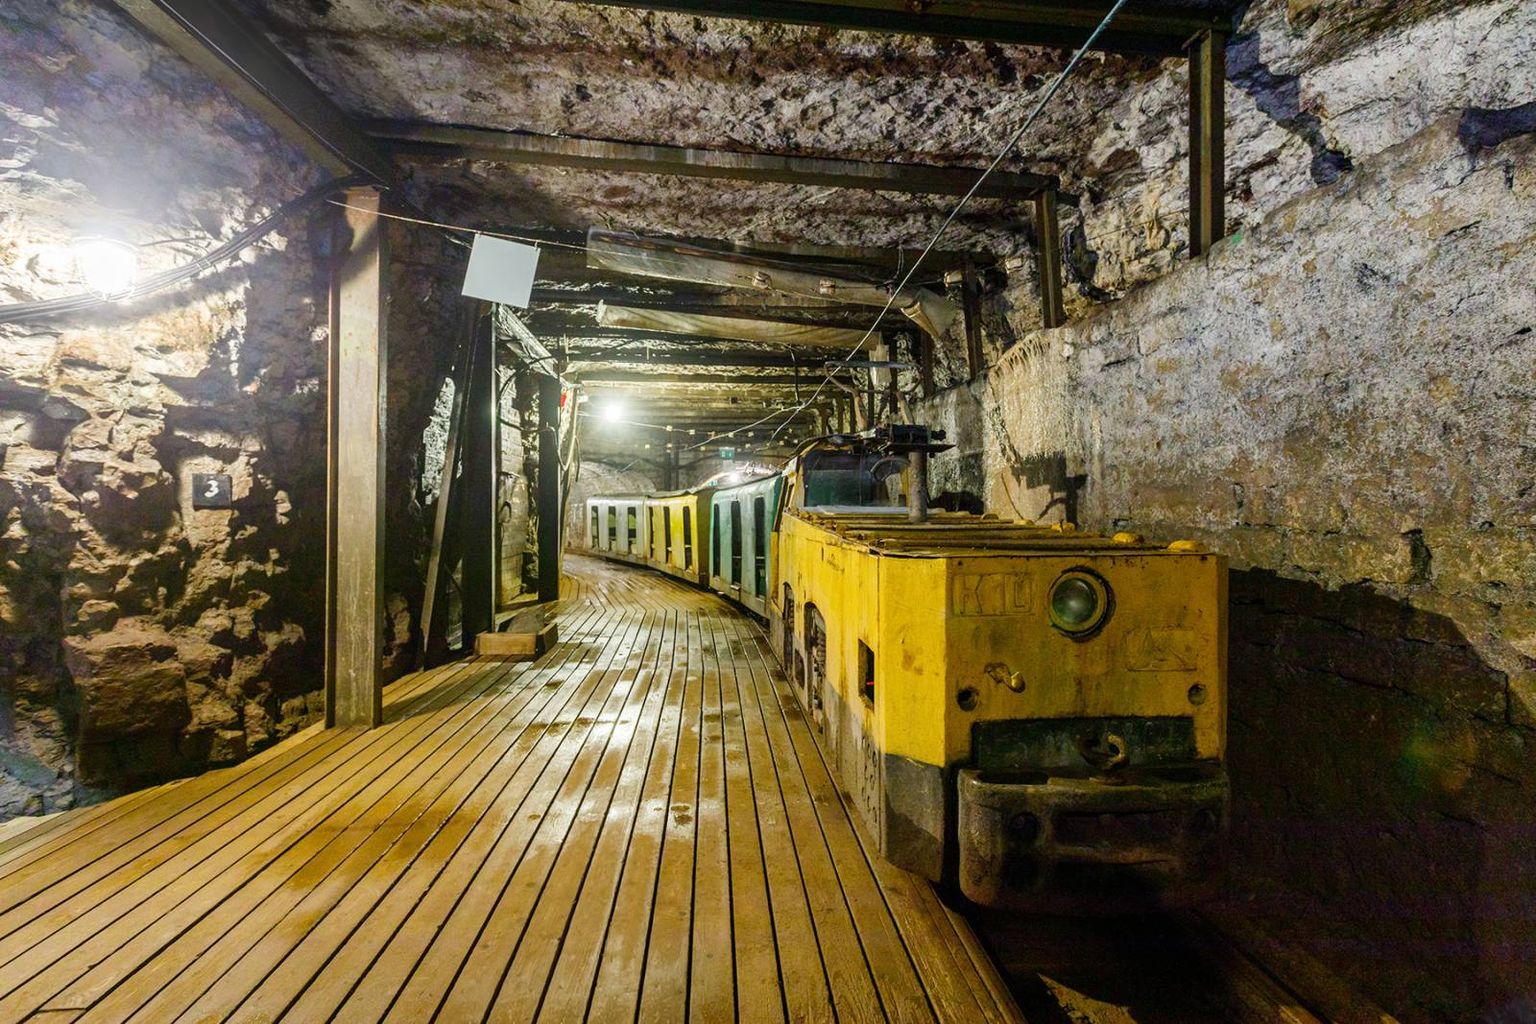 В шахтном музее в Кохтла-Нымме Ночь музеев начнется уже днем, когда предварительно забронировавшие место отправятся в эксклюзивный тур по темным шахтным штрекам.